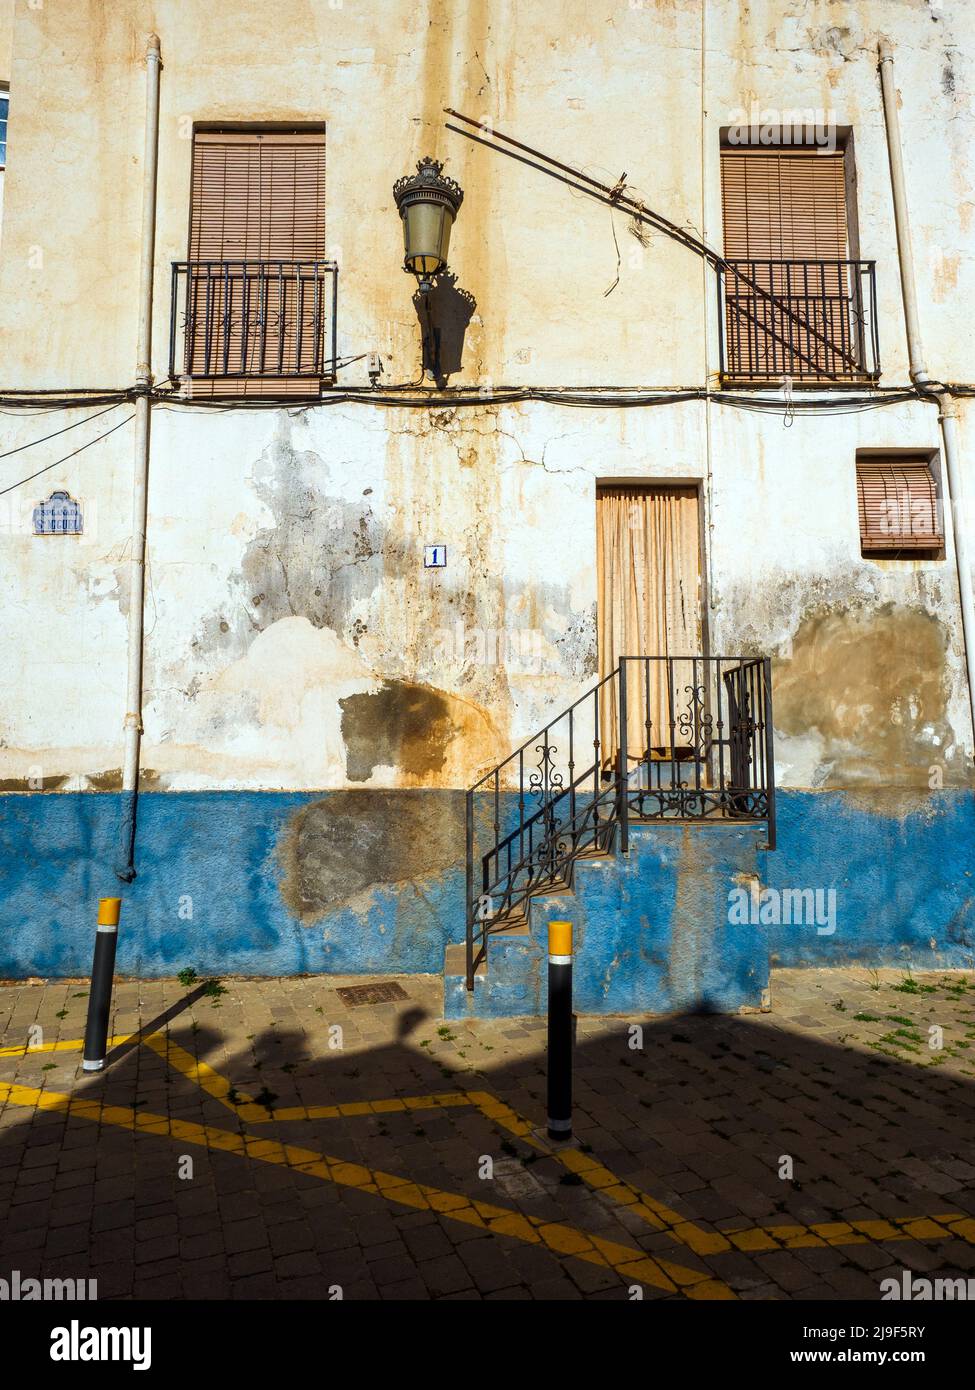 Gebäude im alten Teil der touristischen Stadt Almunecar an der costa Tropical - Andalusien, Spanien Stockfoto